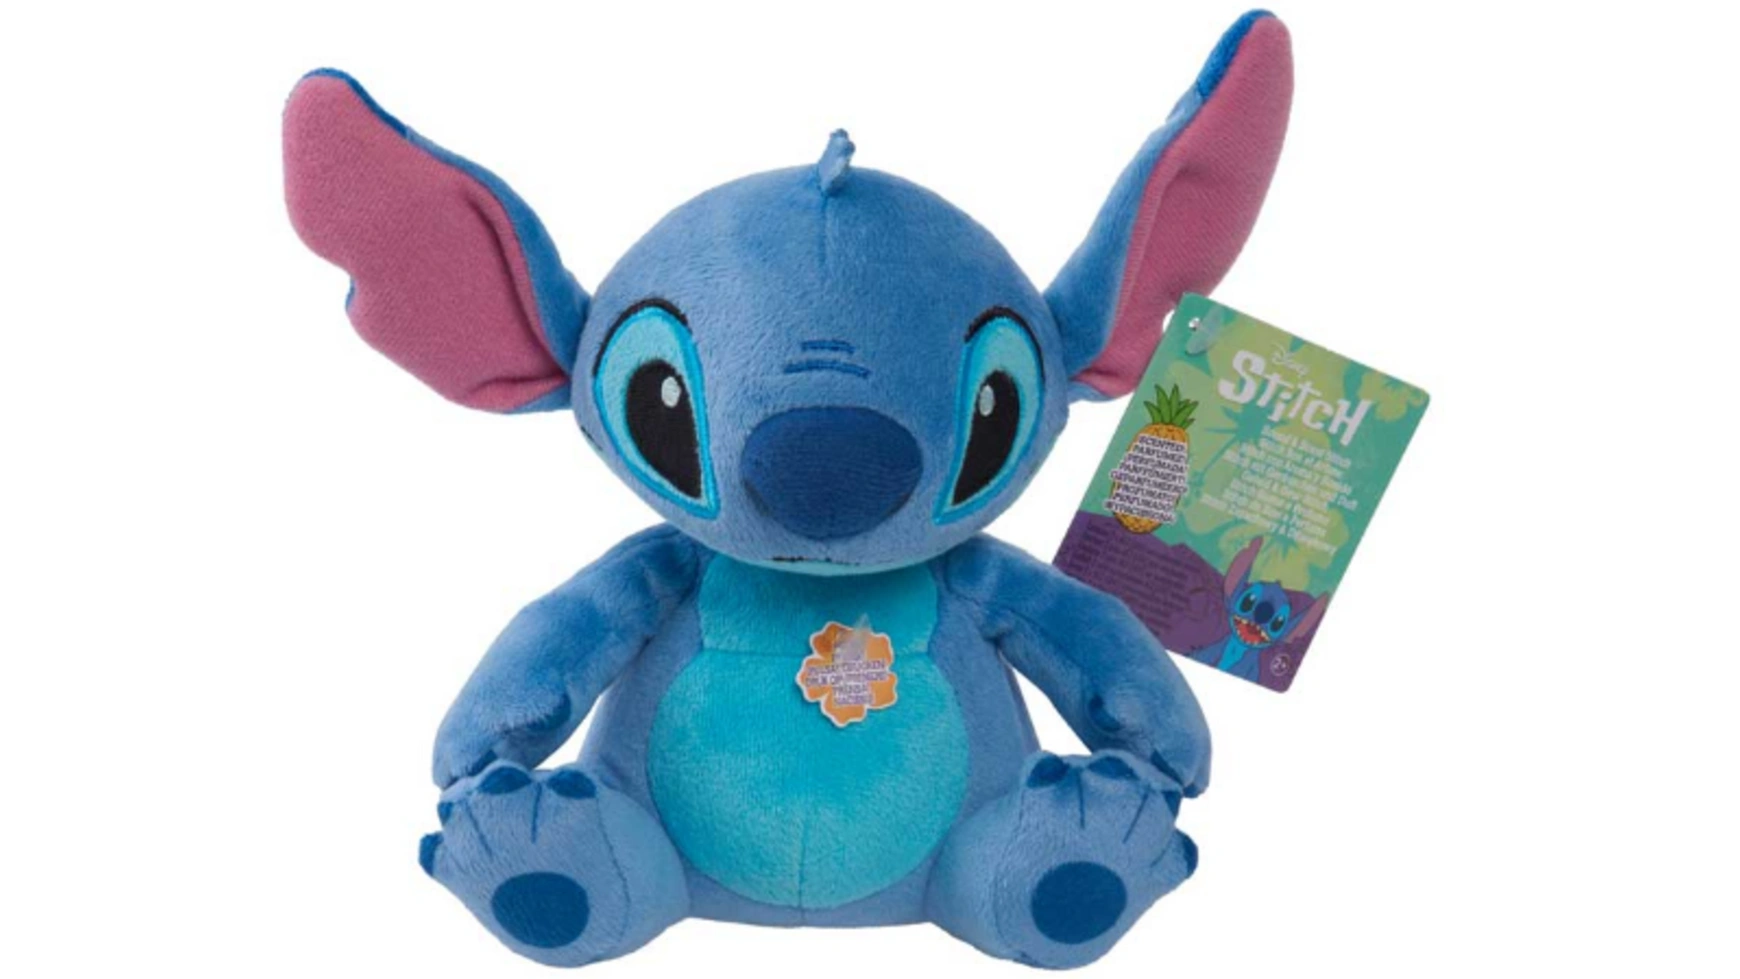 Disney Плюшевая игрушка Stitch Sound 15 см плюшевая игрушка disney stitch кукла аниме лило и ститч сидящая 12 30 см мультяшная мягкая кукла детский подарок